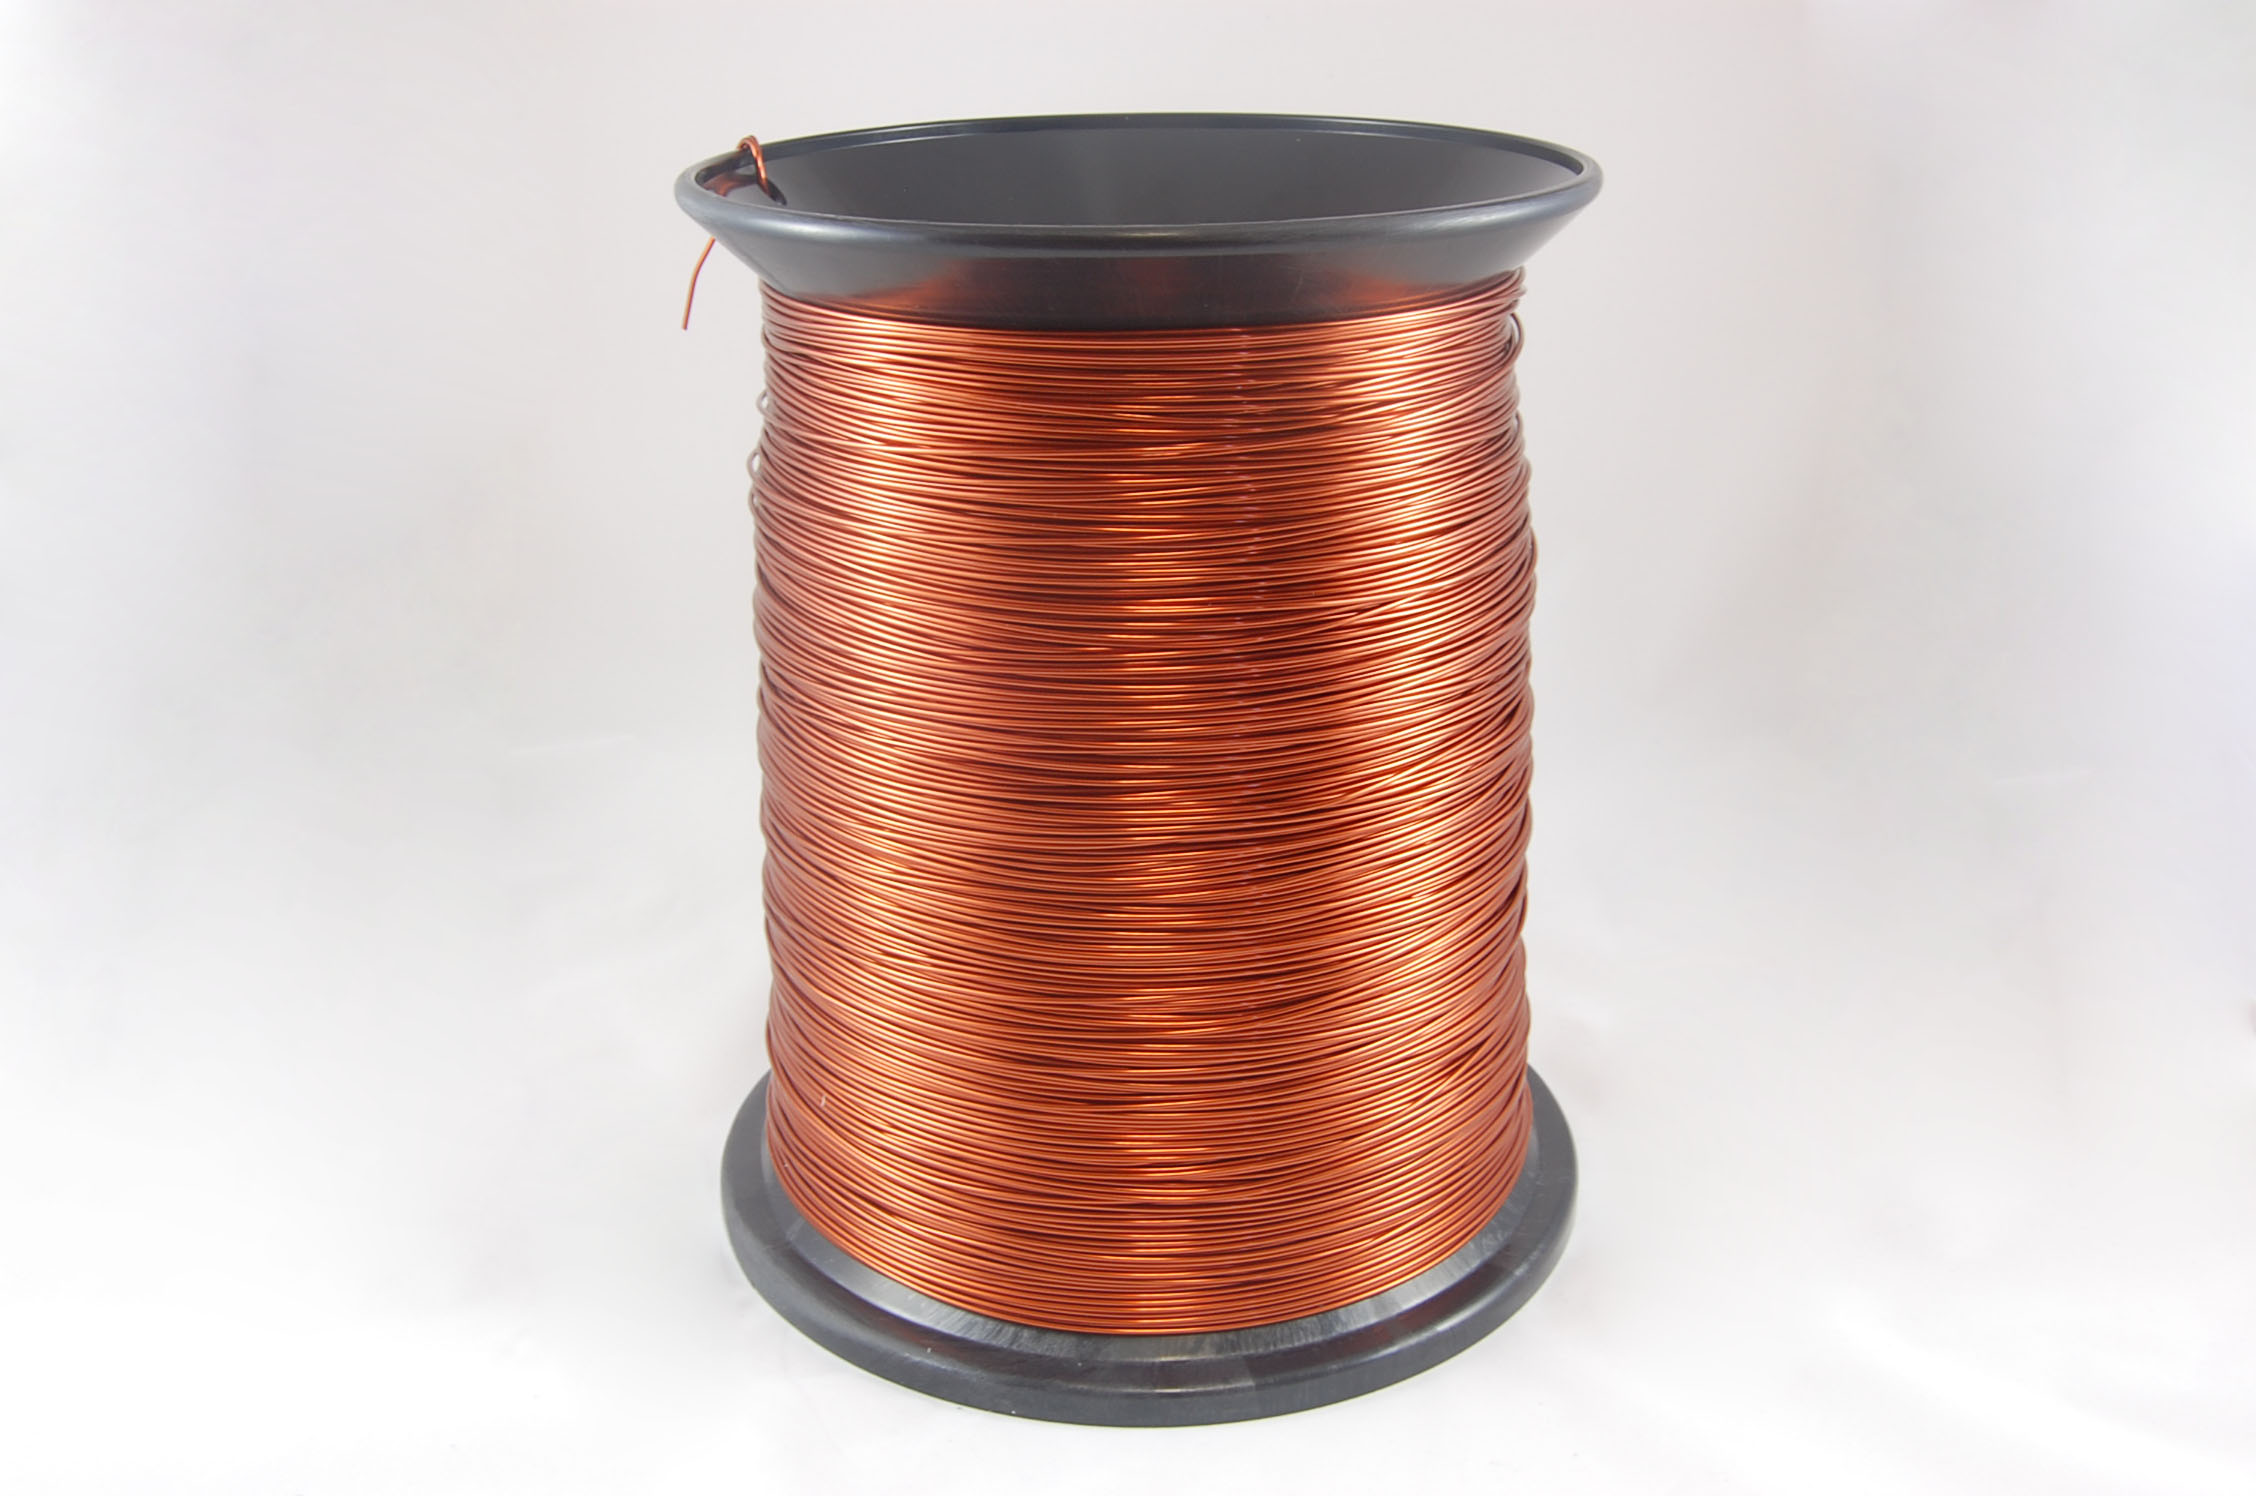 #16 Heavy GP/MR-200 Round MW 35 Copper Magnet Wire 200°C, copper, 85 LB box (average wght.)